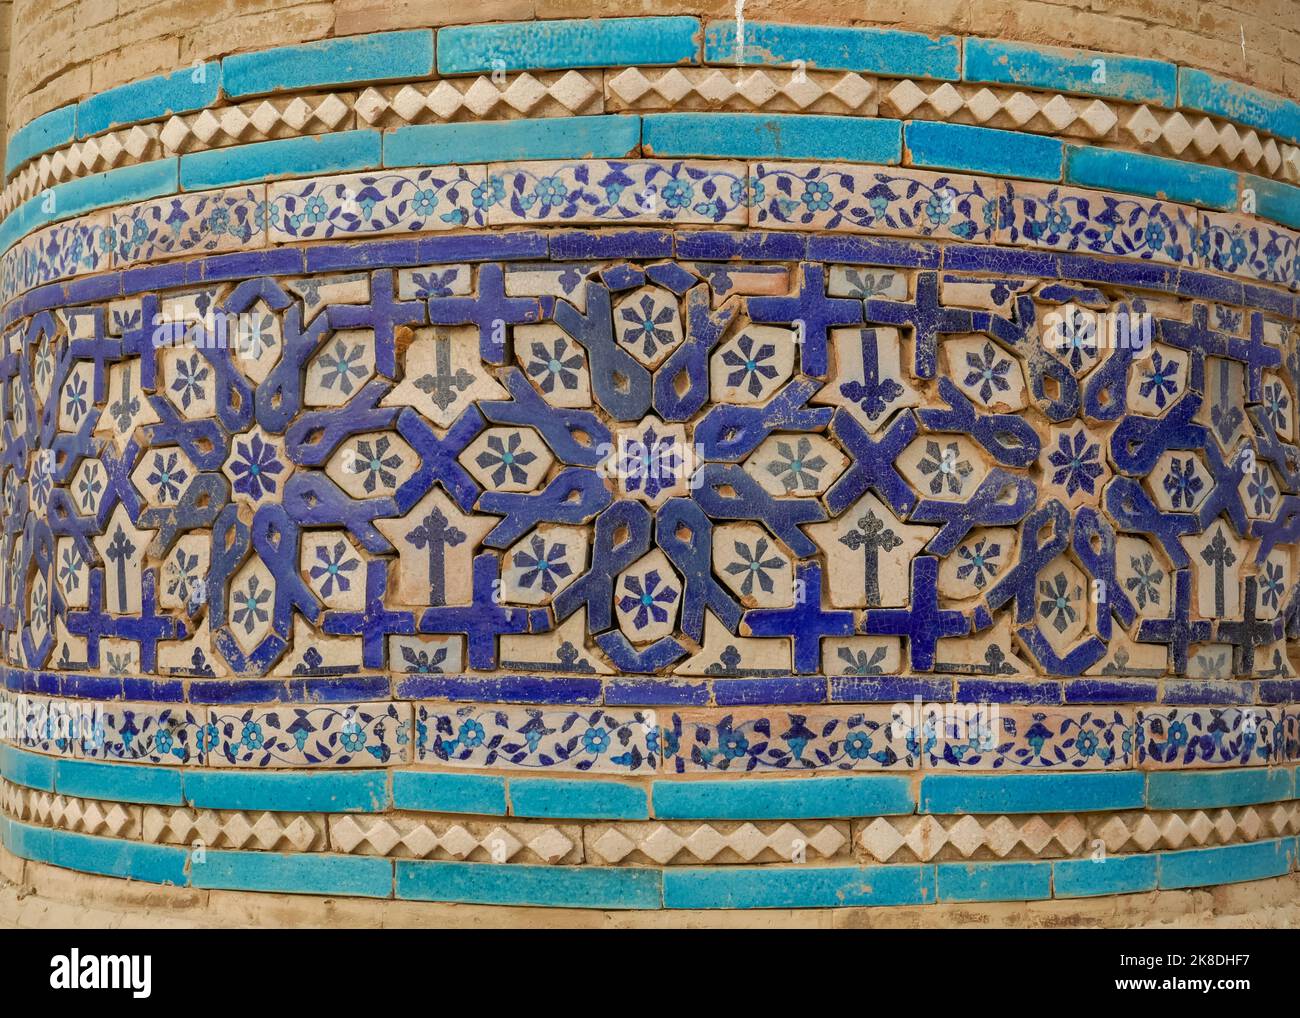 Vue rapprochée de l'ancienne mosaïque traditionnelle bleue décor floral sur la brique à la célèbre tombe de Bibi Jawindi, UCH Sharif, Bahawalpur, Punjab, Pakistan Banque D'Images